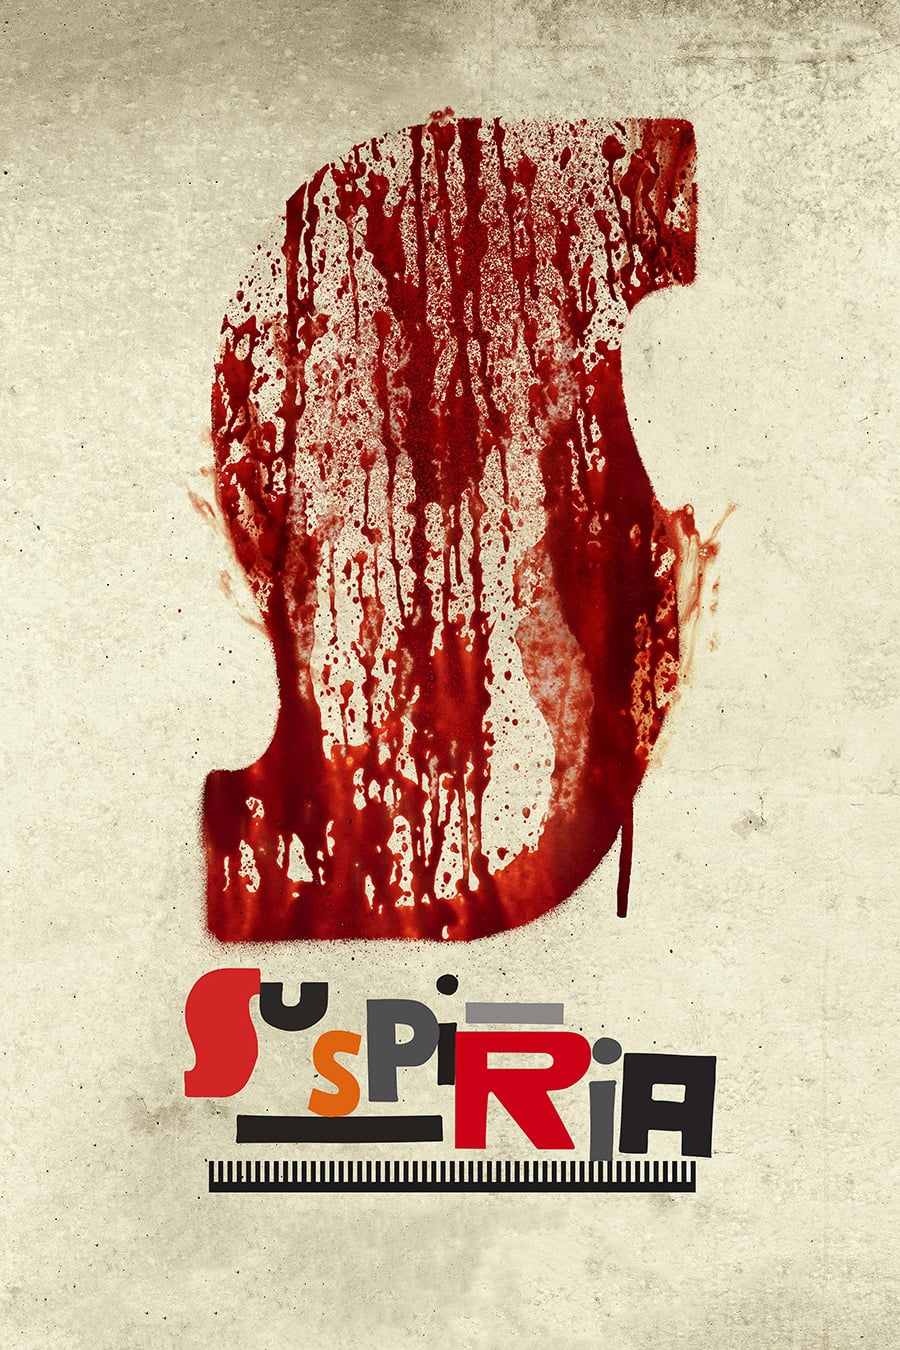 Poster de la película "Suspiria"